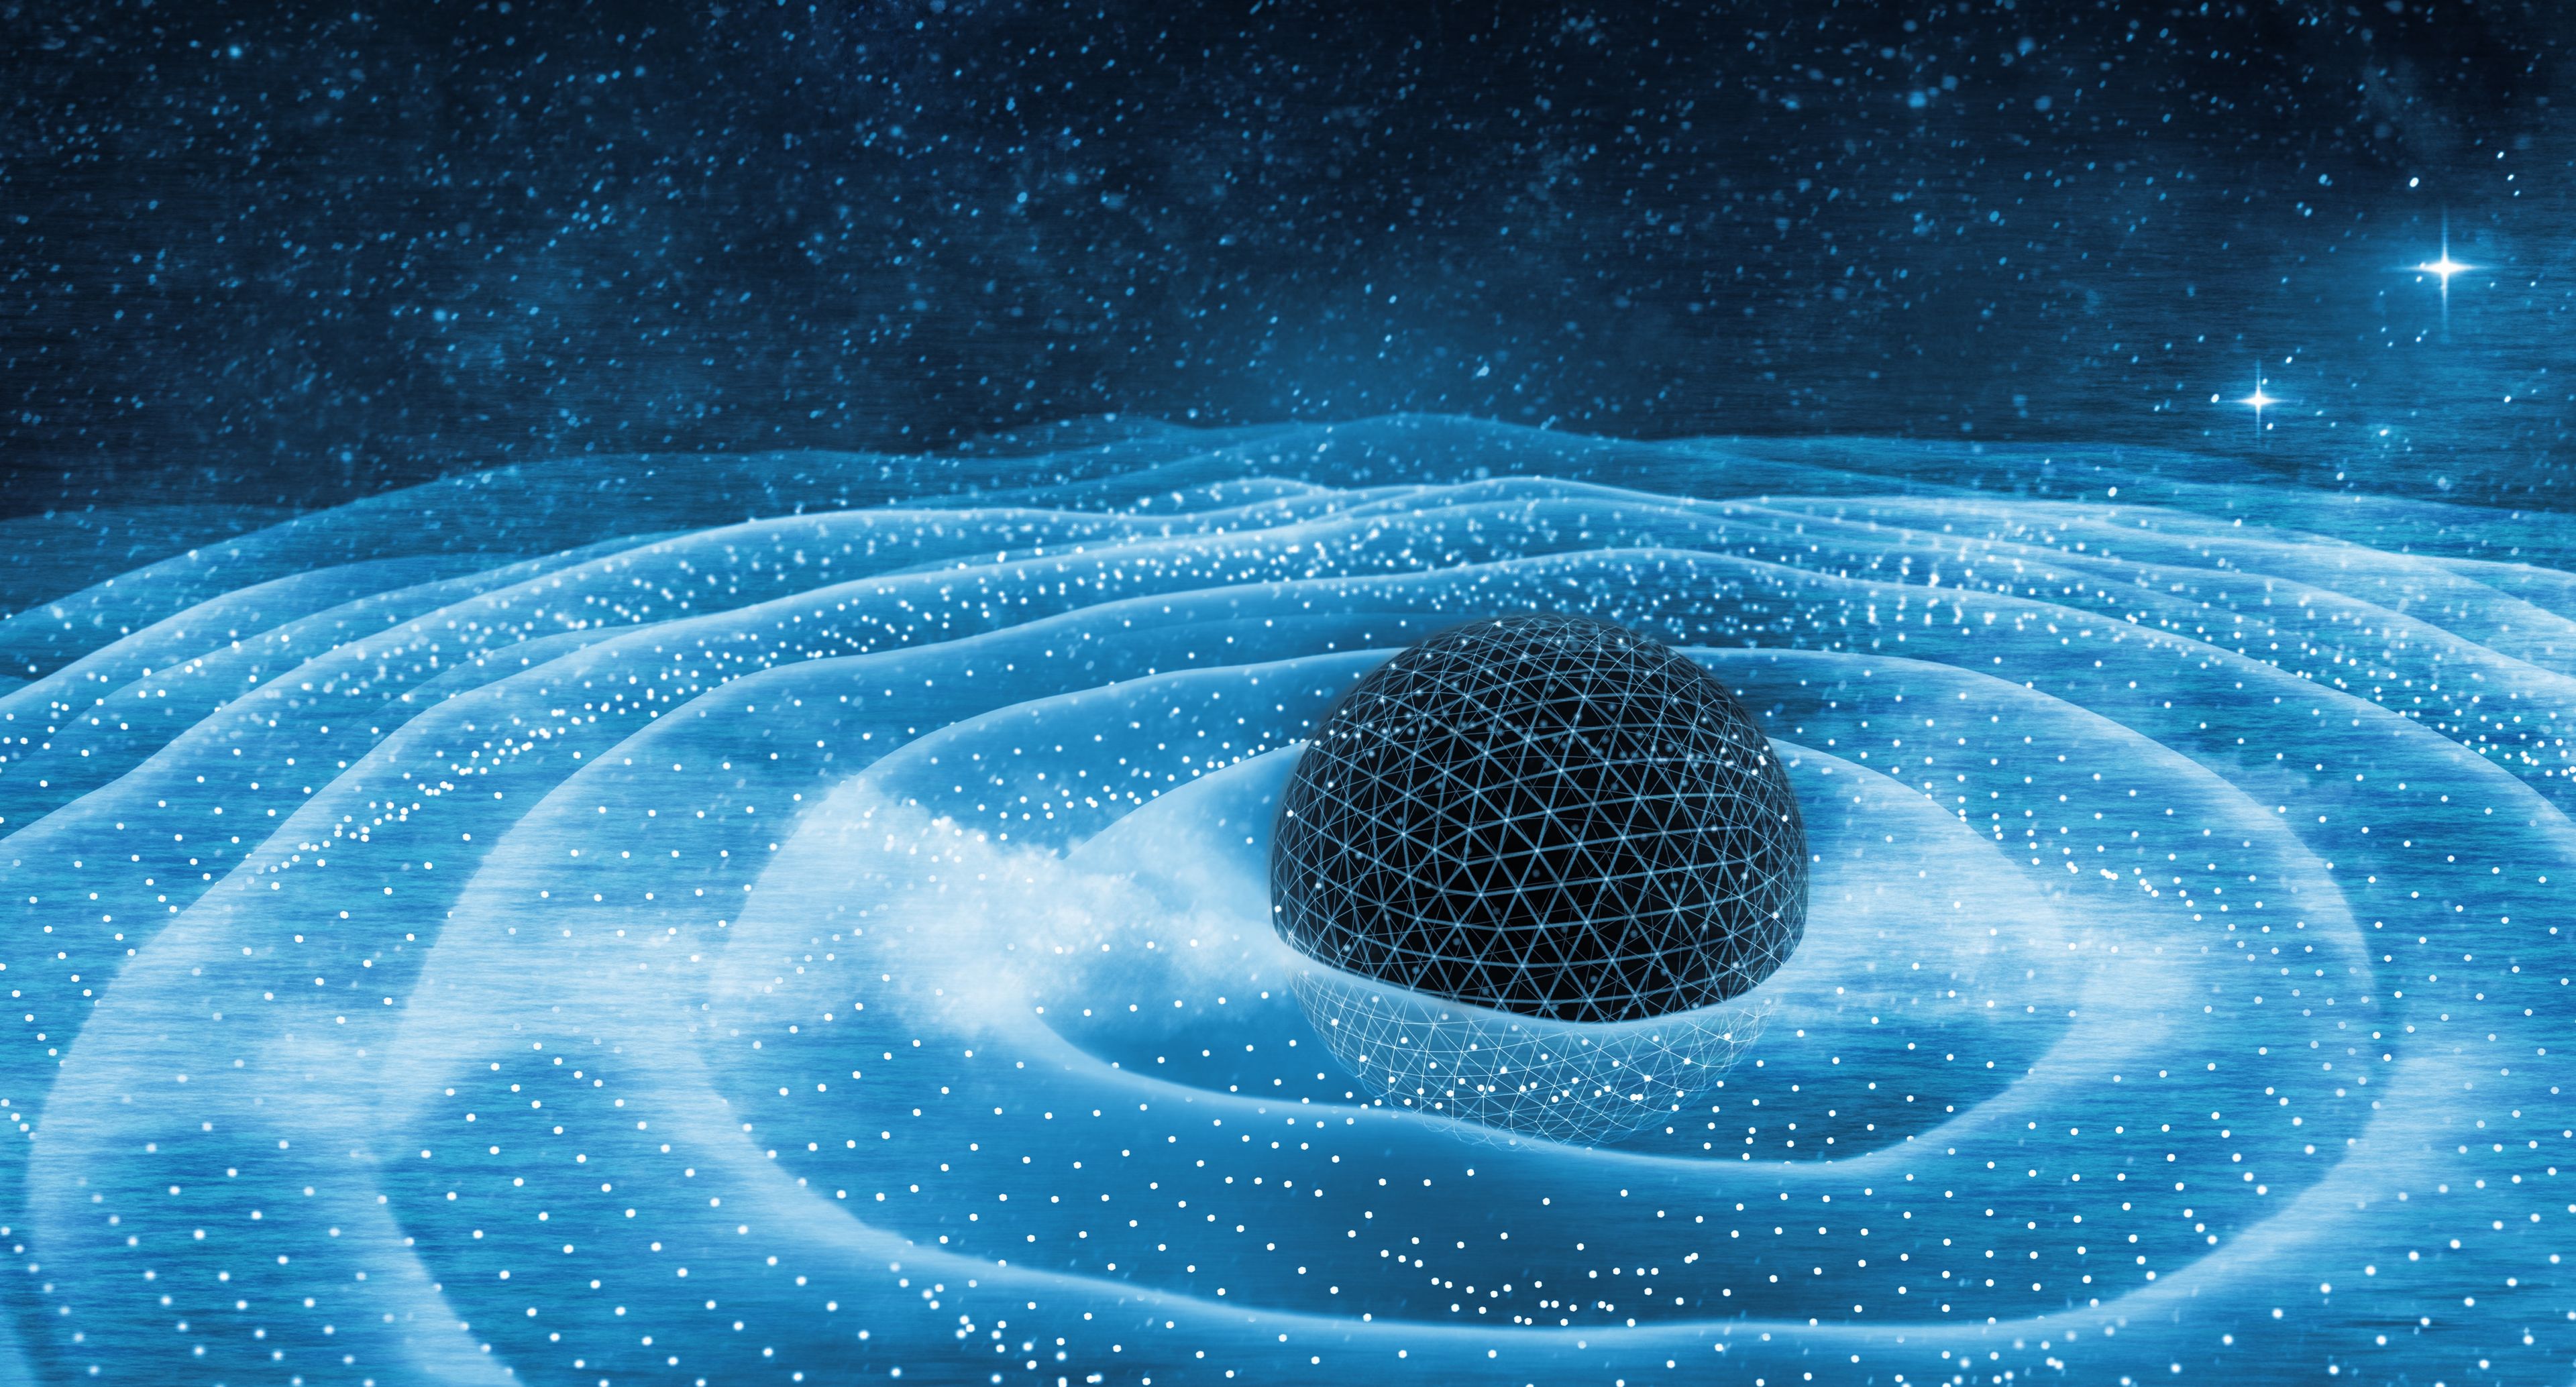 Ondas de gravitación alrededor del agujero negro en la ilustración 3D espacial.